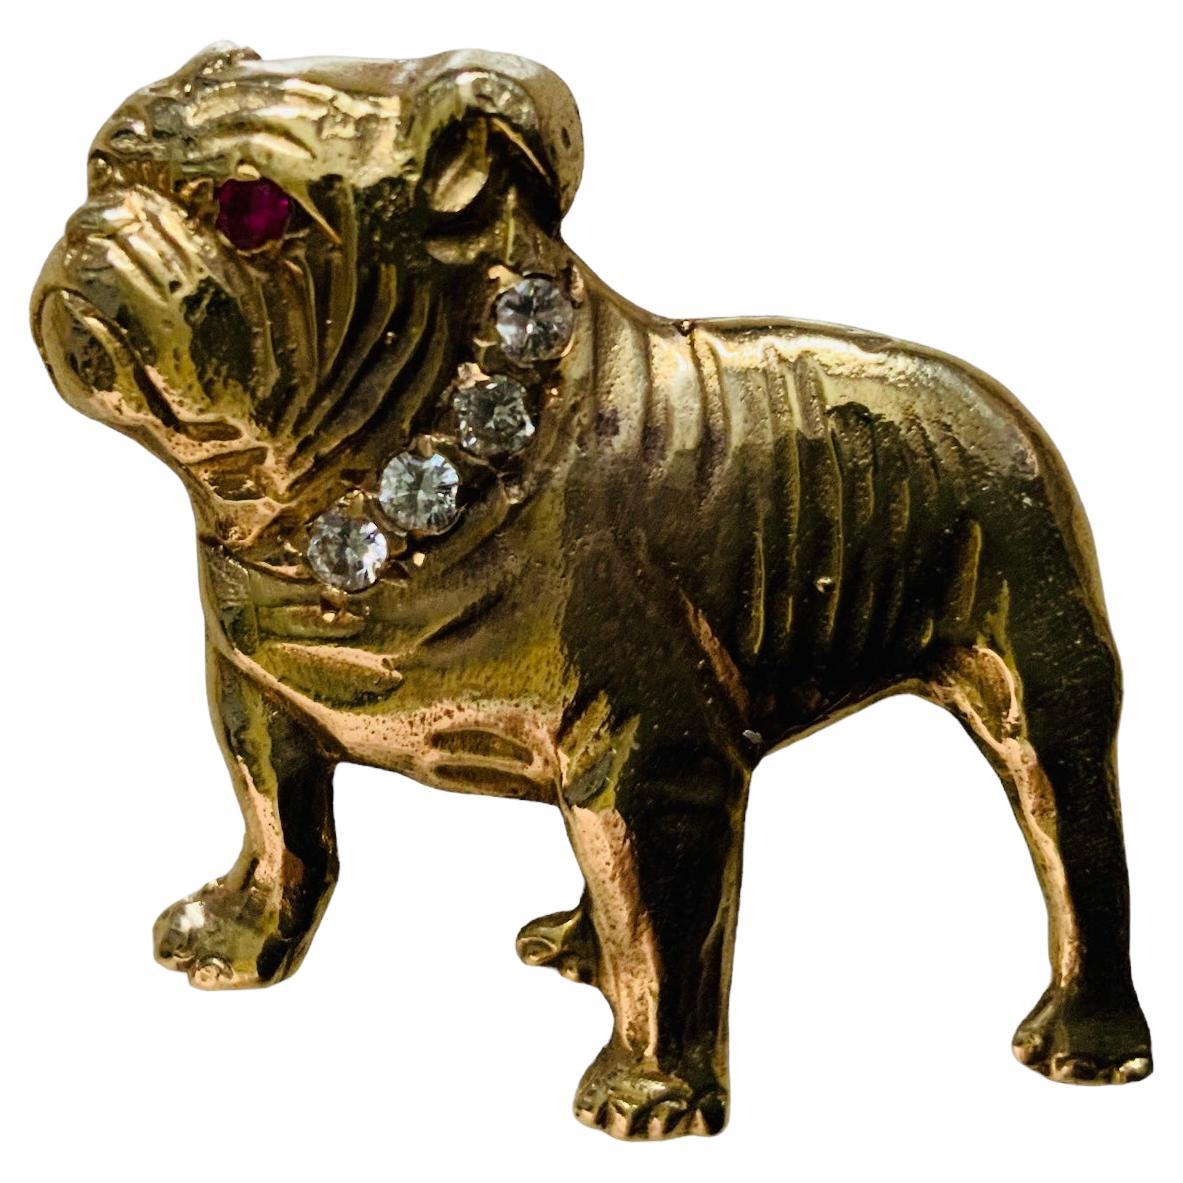 Il s'agit d'une broche en or jaune 14 carats, diamants et rubis représentant un bouledogue. Il représente un Bulldog debout, orné d'un collier de quatre diamants en serti pave et d'un œil de rubis dans le même serti.